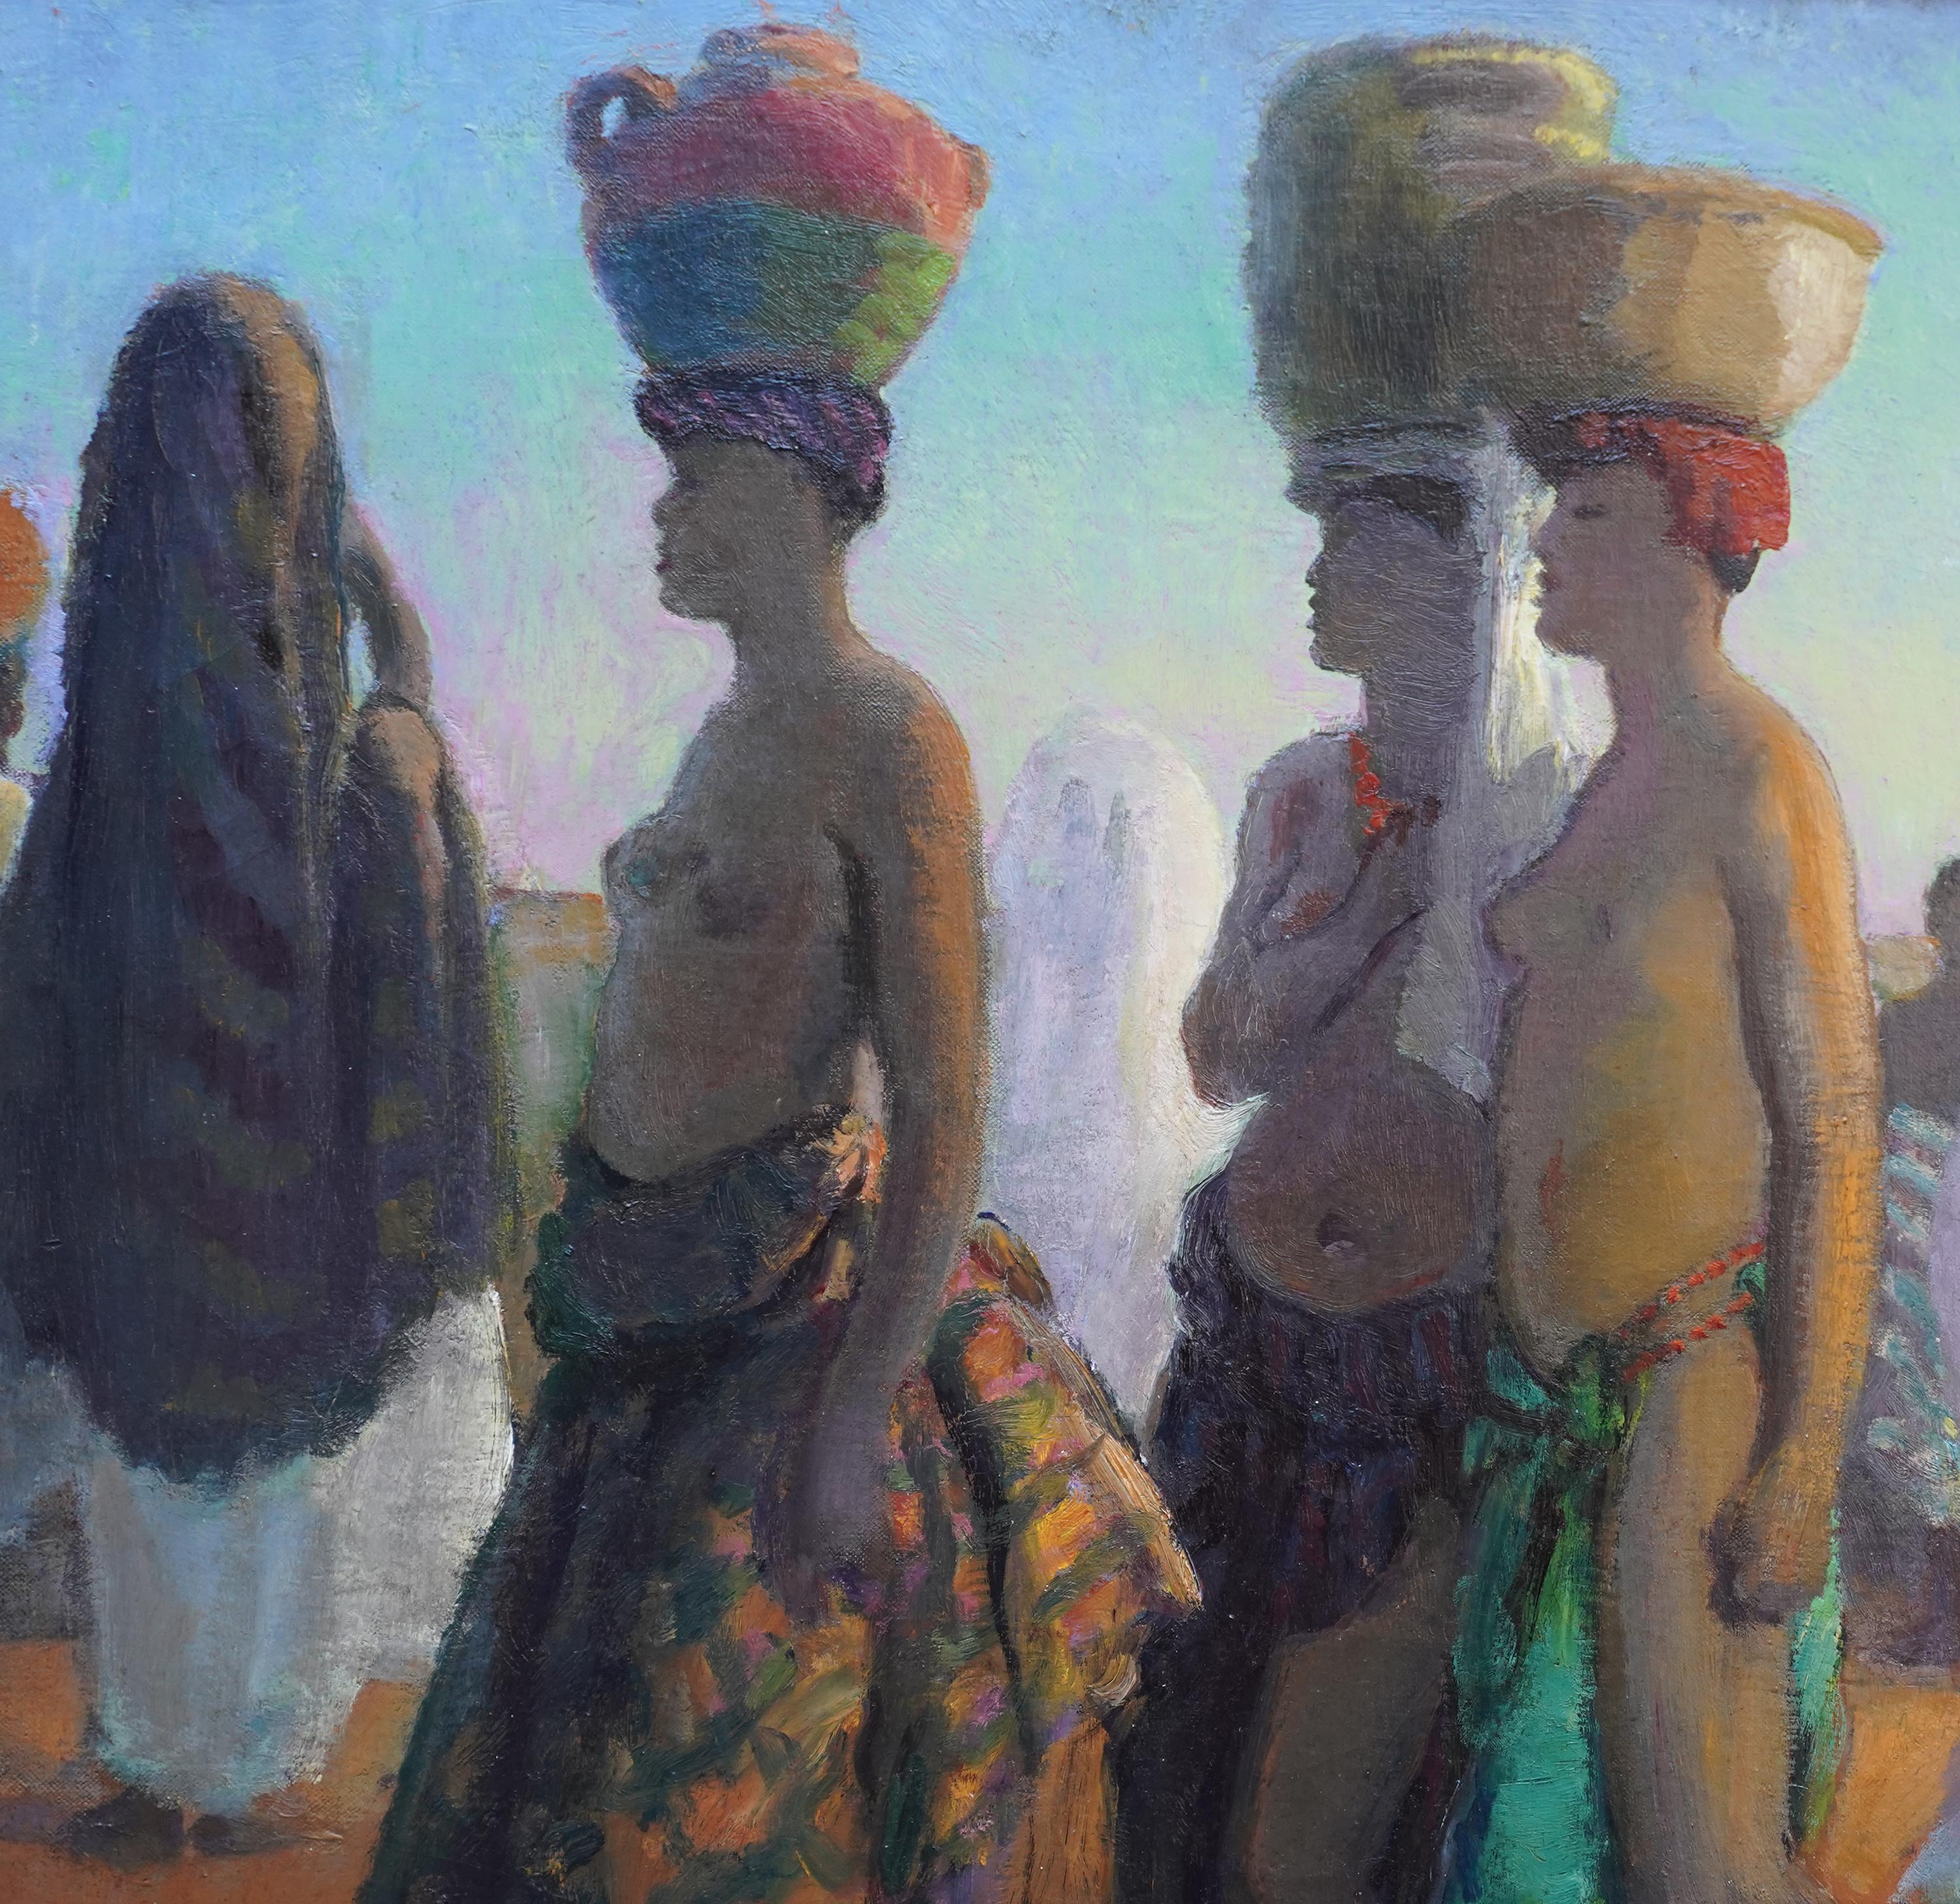 Cette superbe peinture à l'huile post-impressionniste orientaliste est l'œuvre du célèbre artiste britannique Gerald Spencer Pryse. Elle a été peinte vers 1925, alors que Pryse visitait le Maroc et l'Afrique du Nord. La peinture représente trois